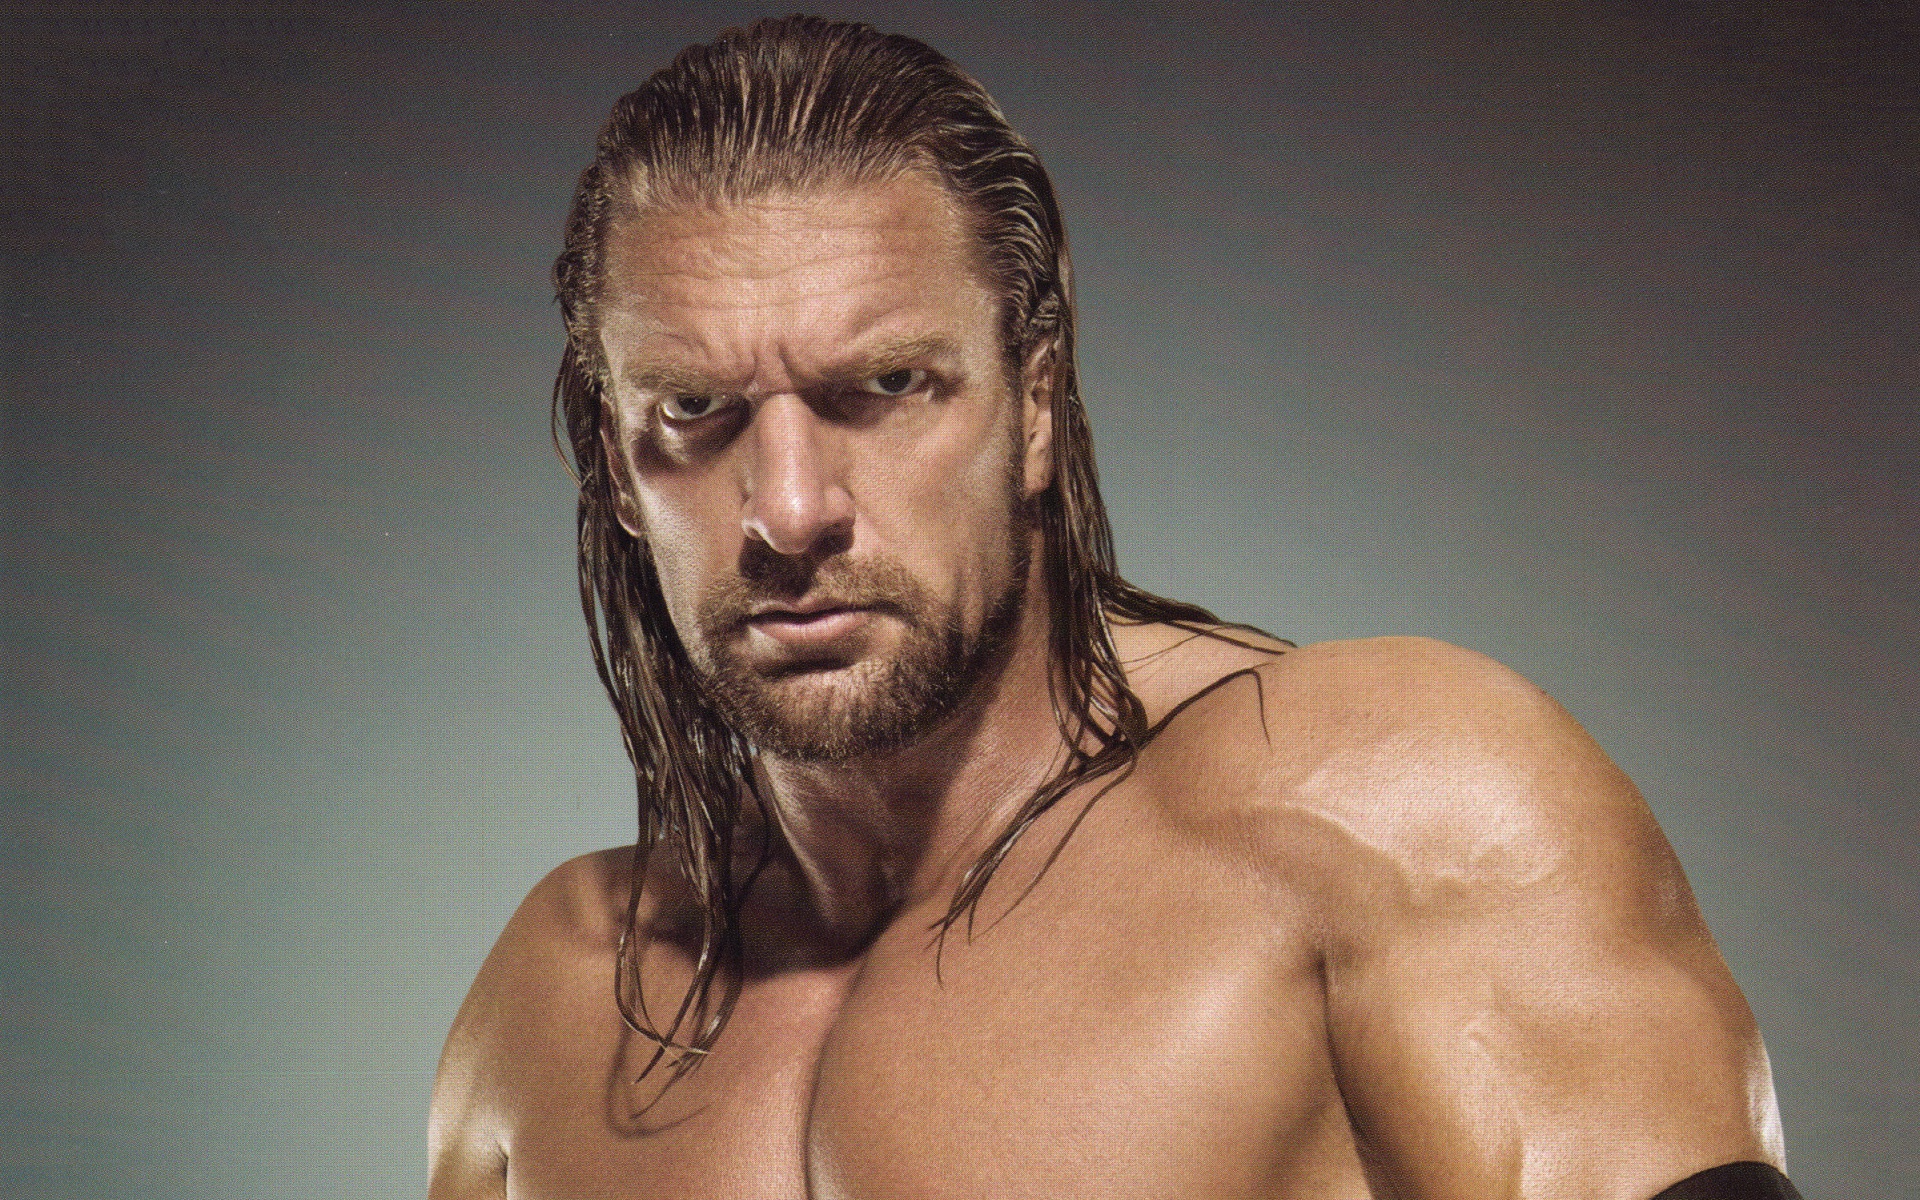 Wwe Wrestler Triple H - Triple H Wwe - HD Wallpaper 